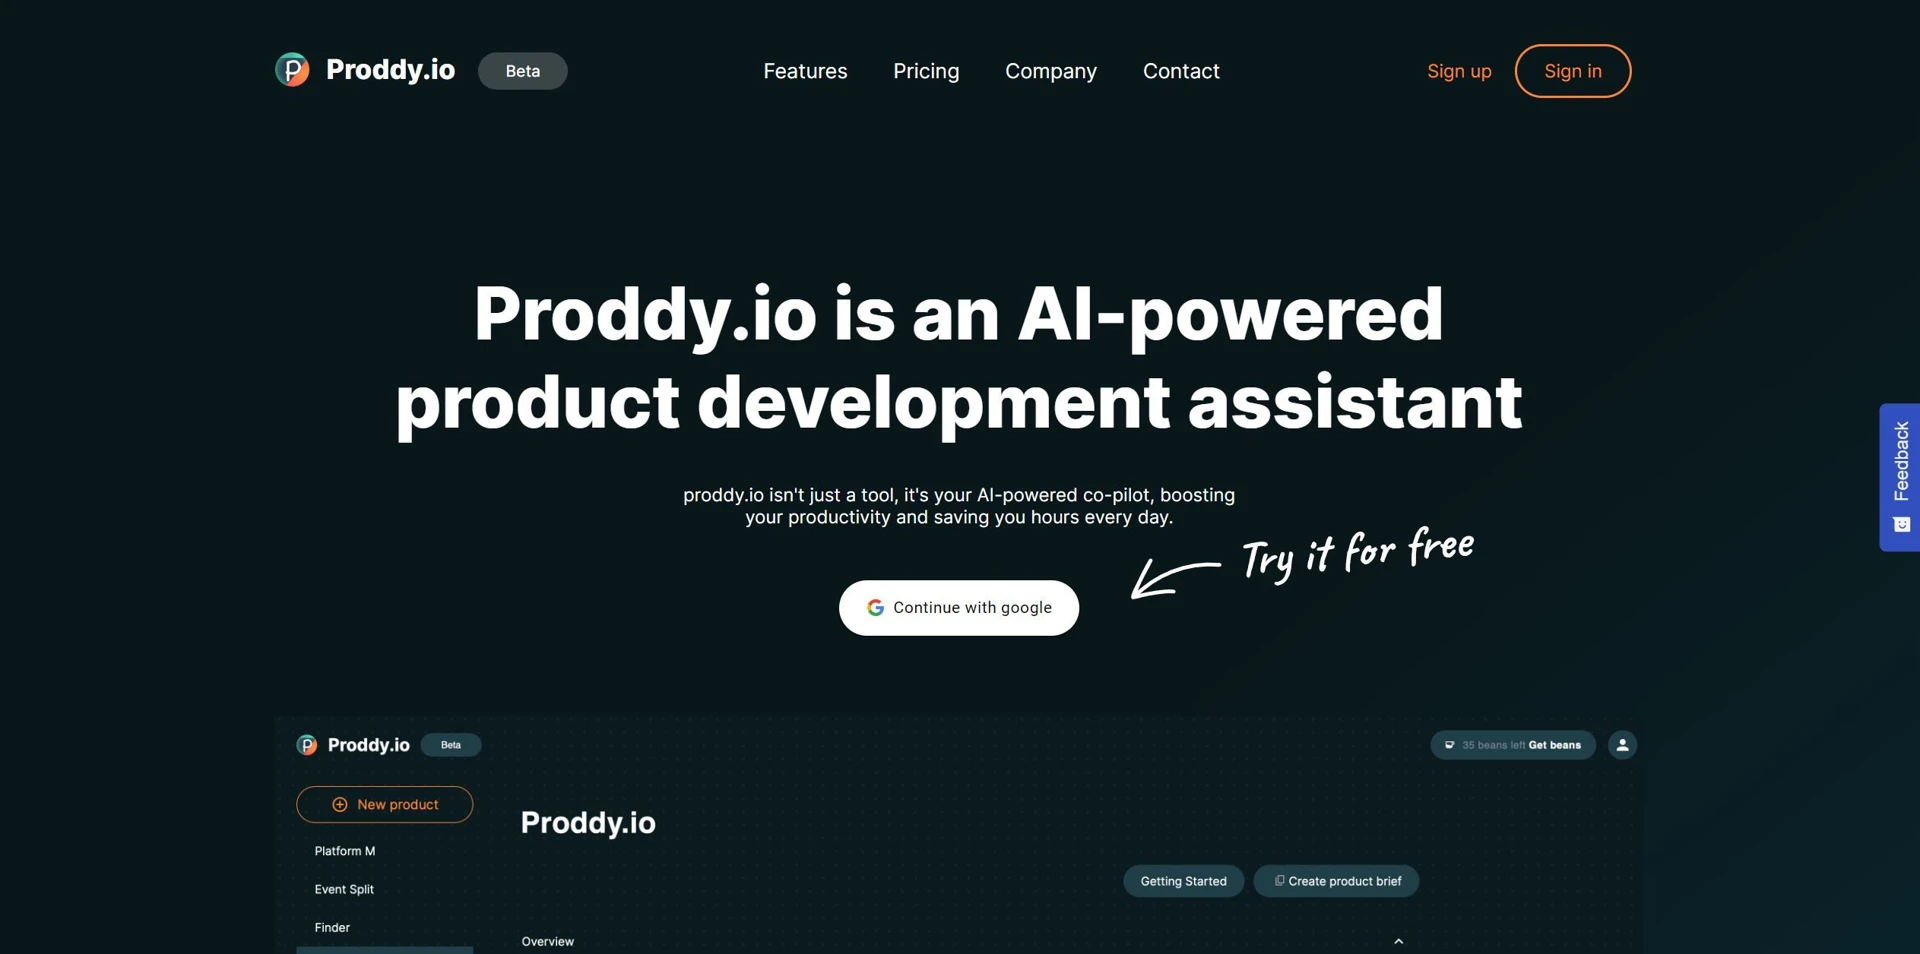 Proddy.iowebsite picture